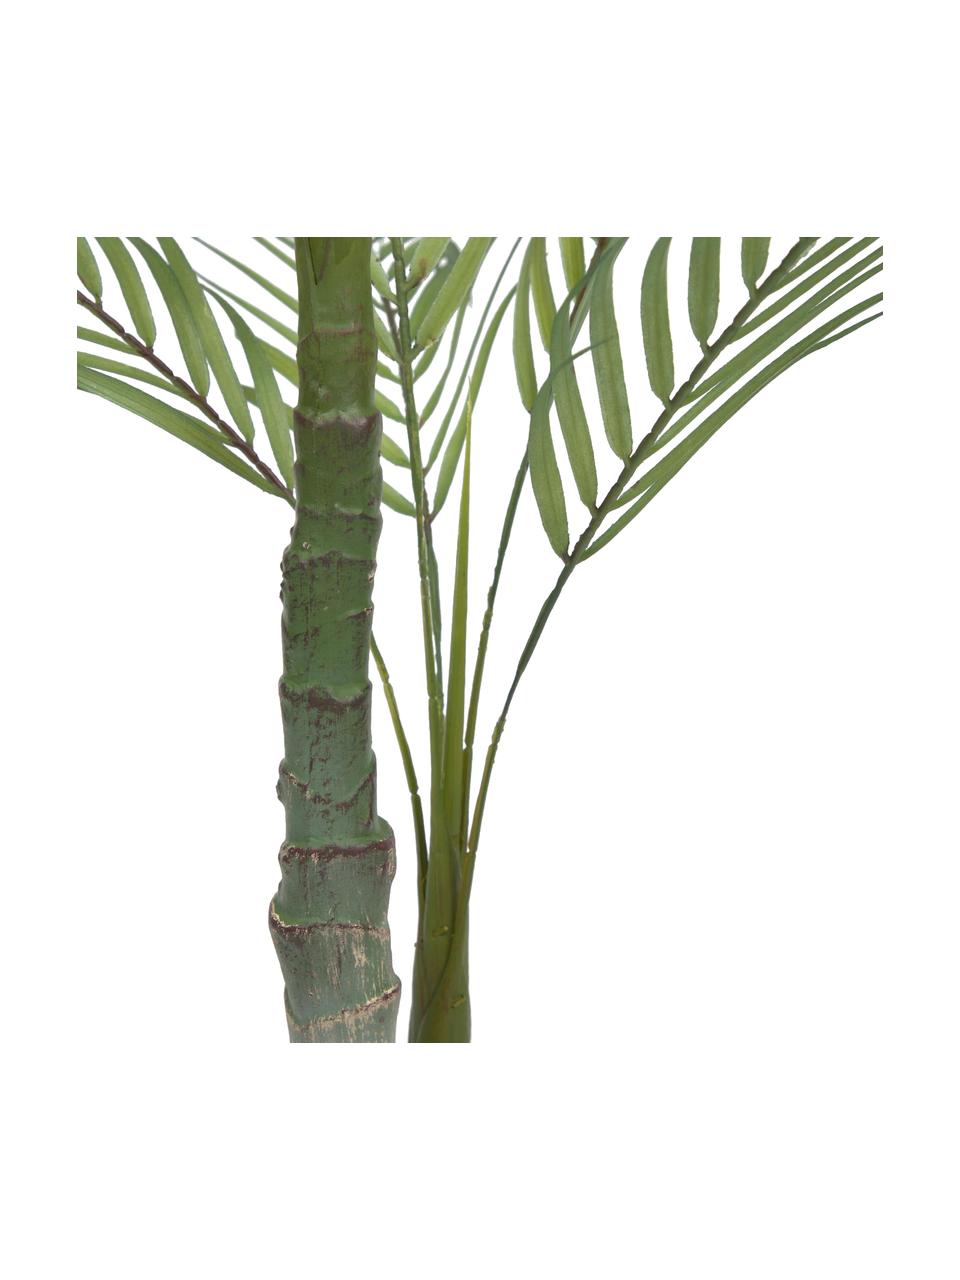 Dekoracyjna palma w doniczce, Tworzywo sztuczne, Zielony, czarny, W 84 cm